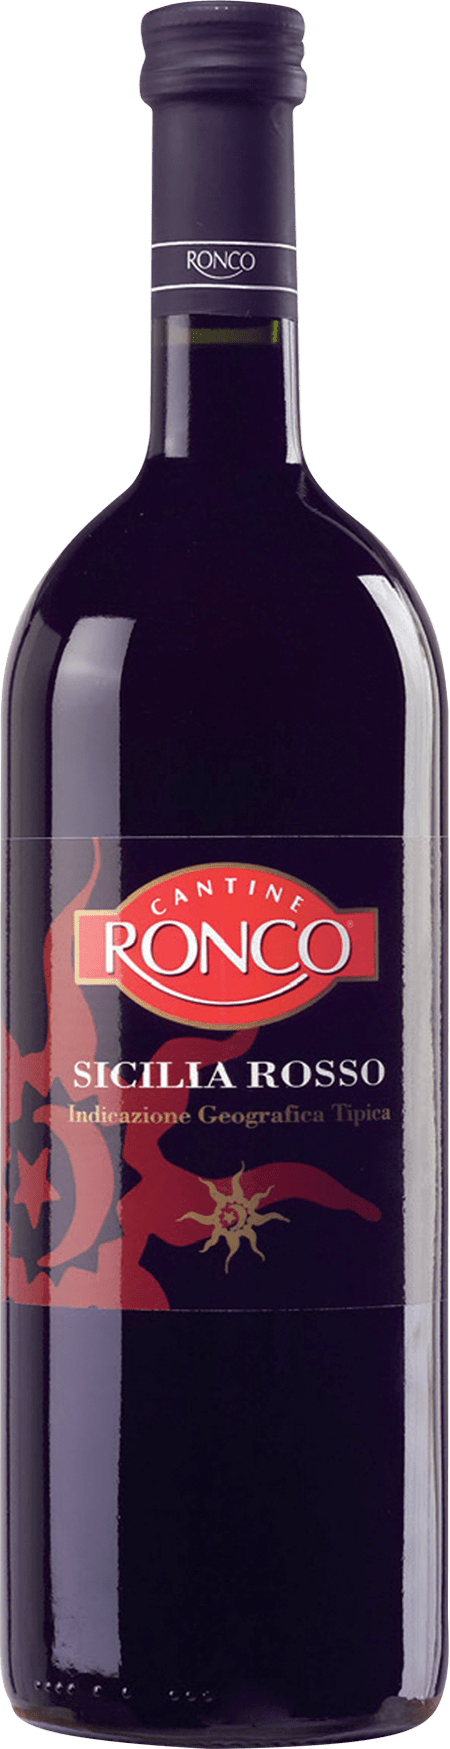 Ronco Sicilia Rosso IGT - Terre Cevico